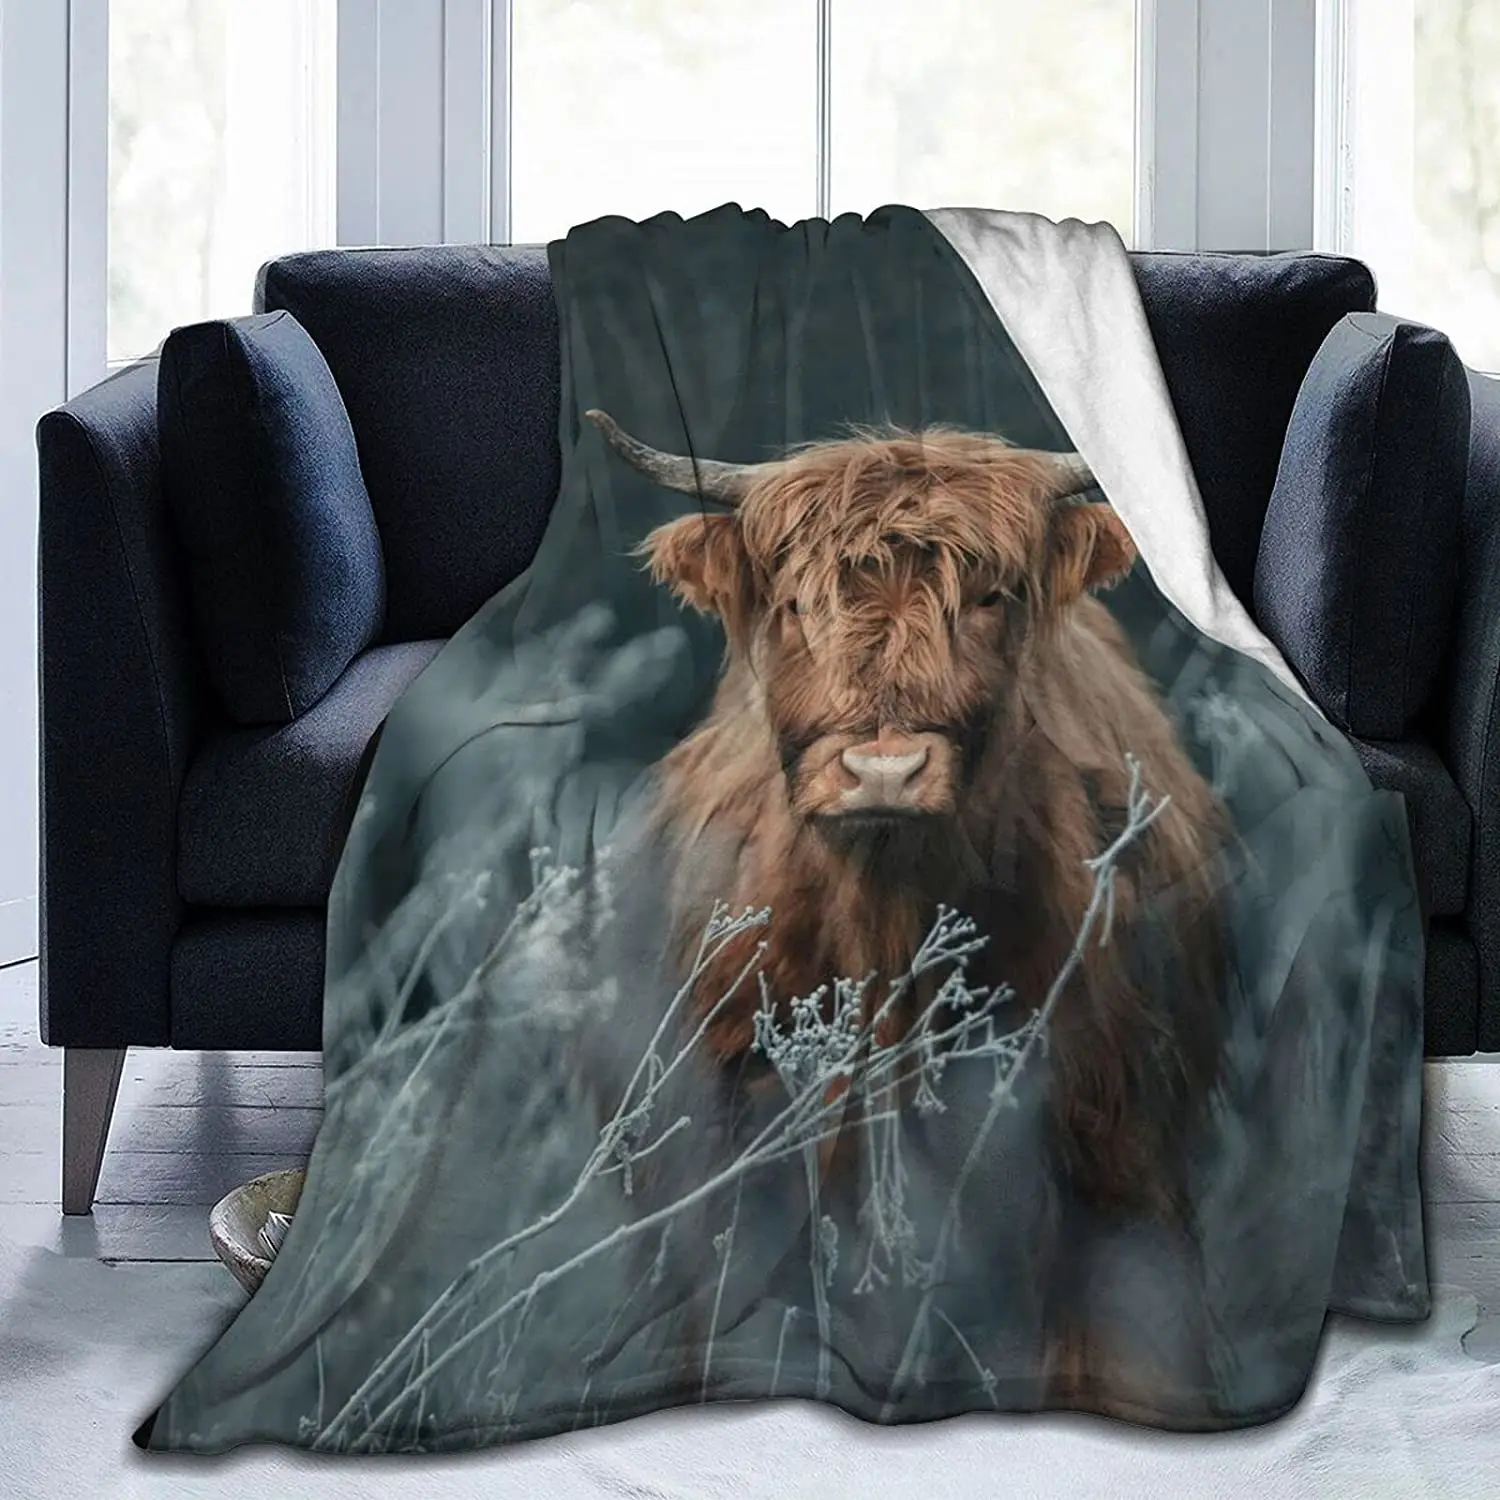 

Одеяло Highland с принтом крупного рогатого скота, супер мягкое покрывало для кровати, кушетки, плюшевые одеяла, теплое покрывало